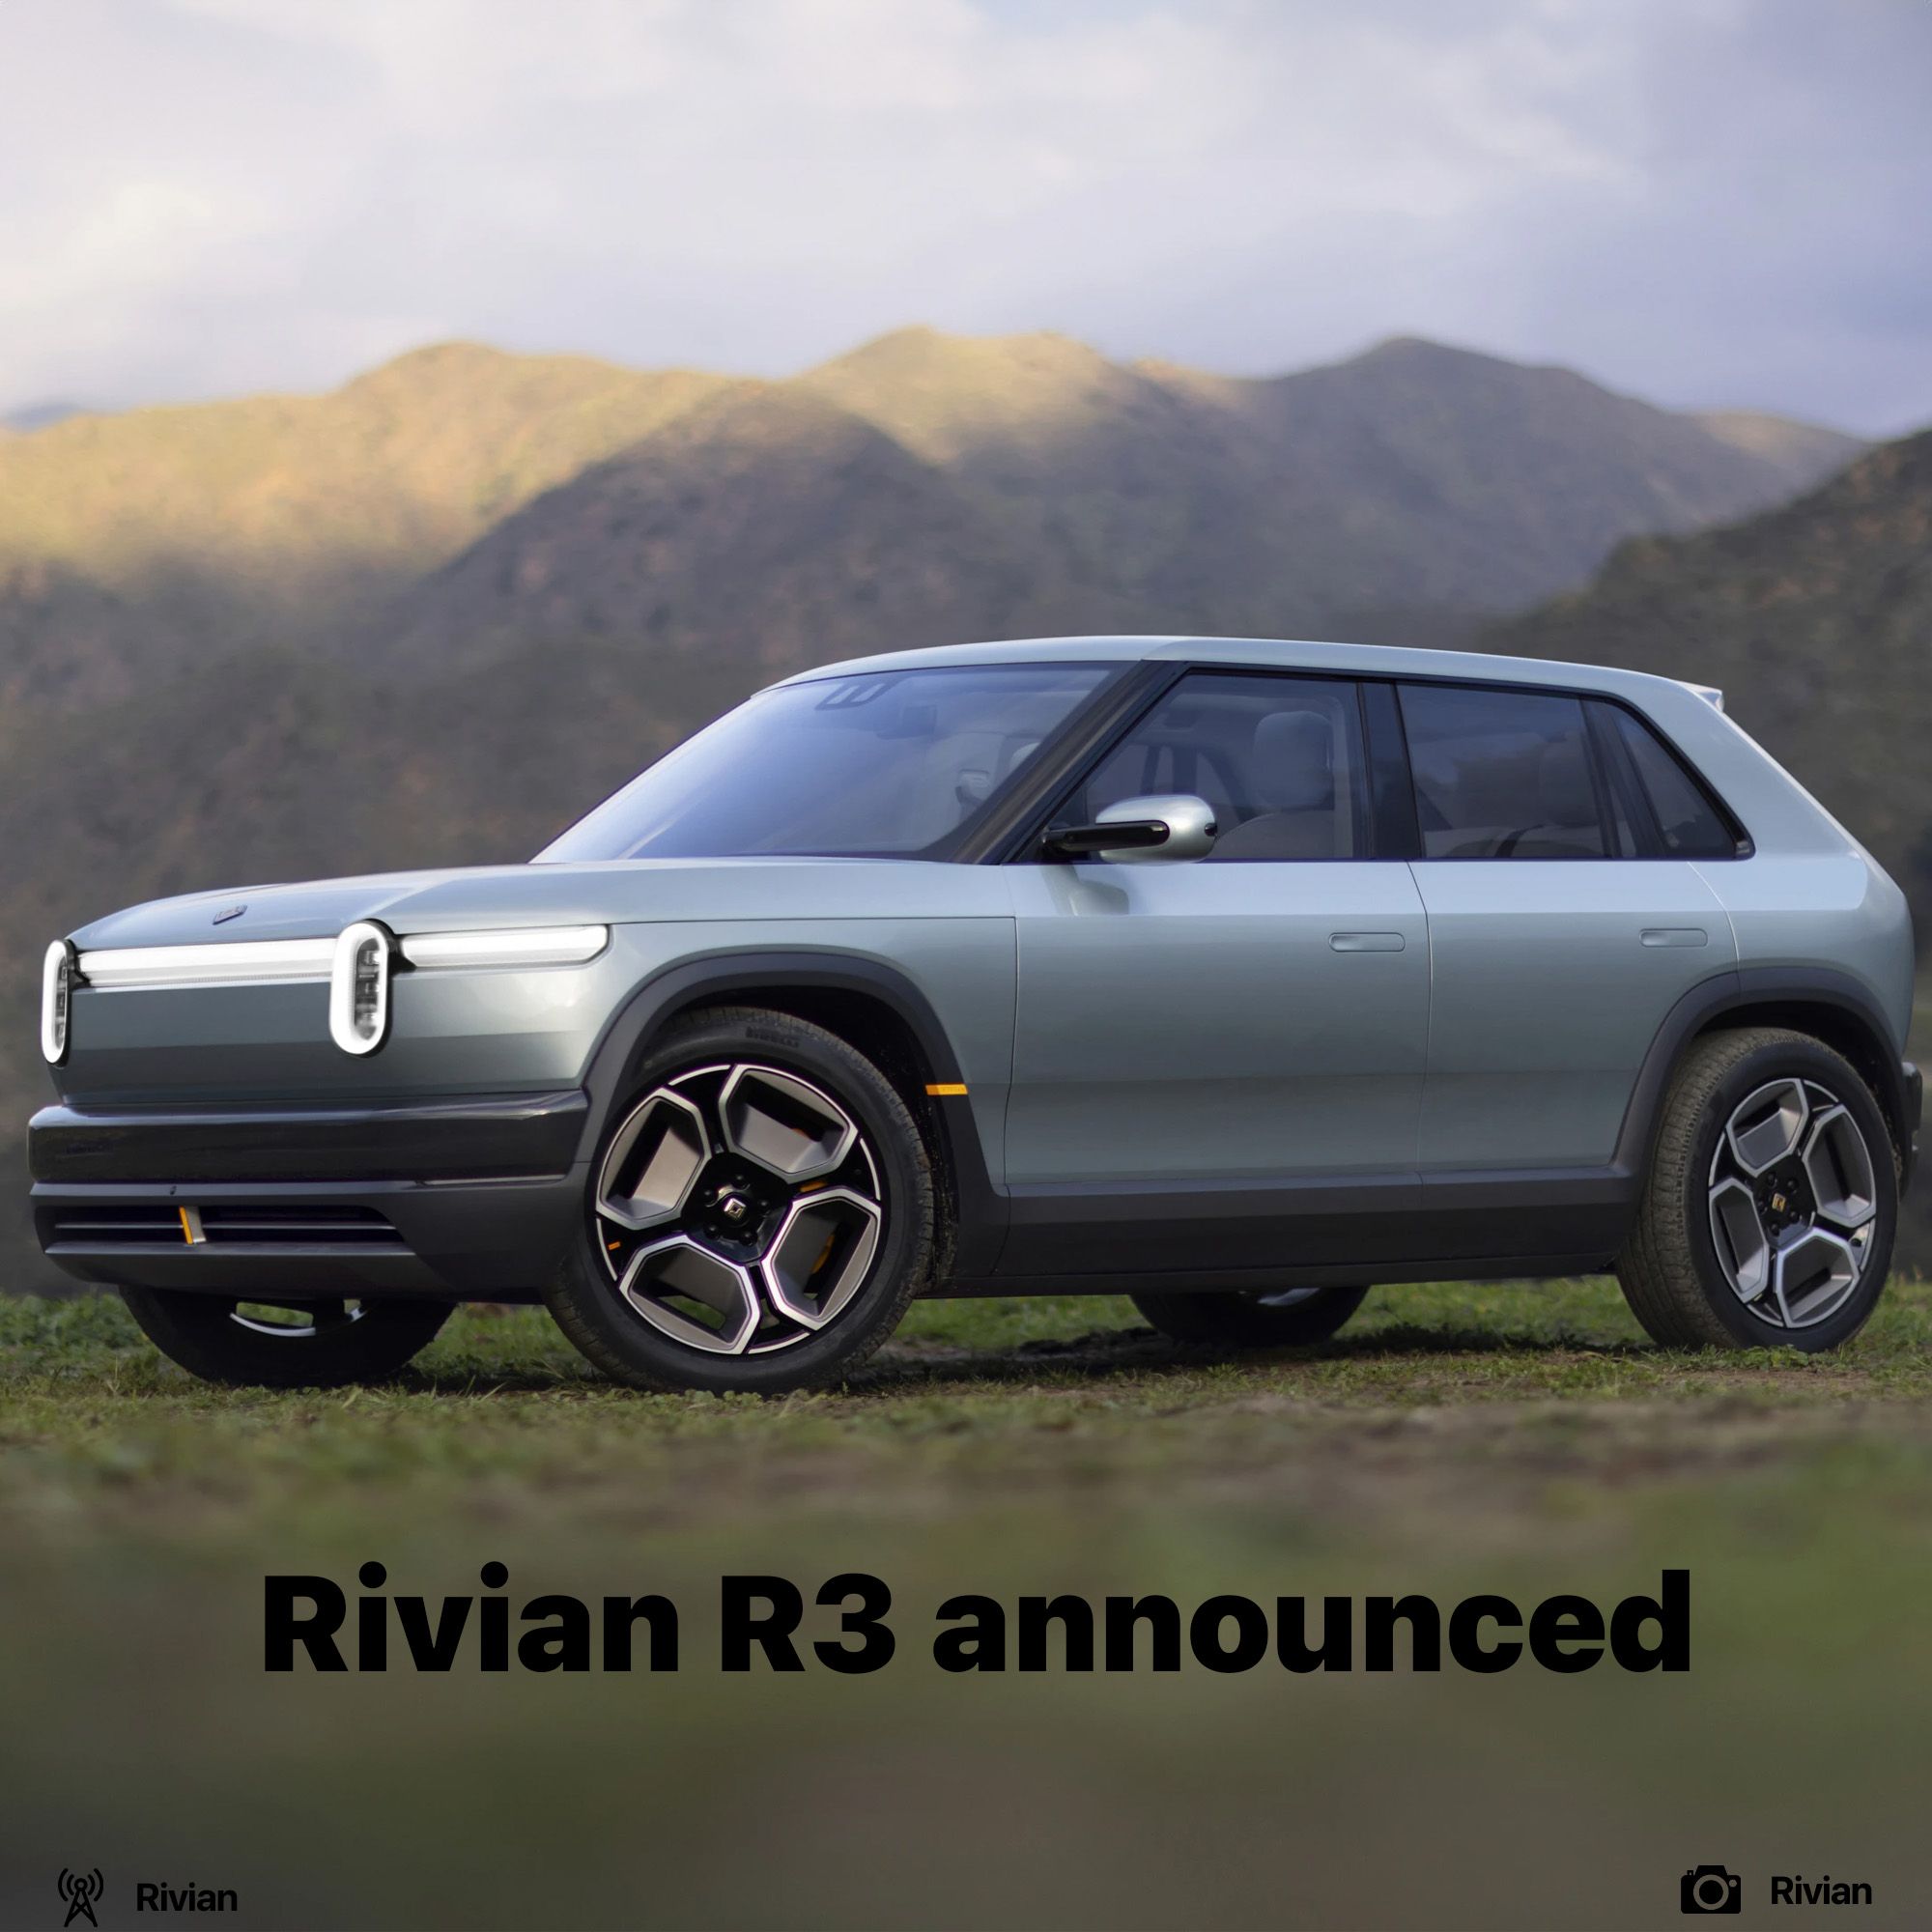 Rivian R3 announced